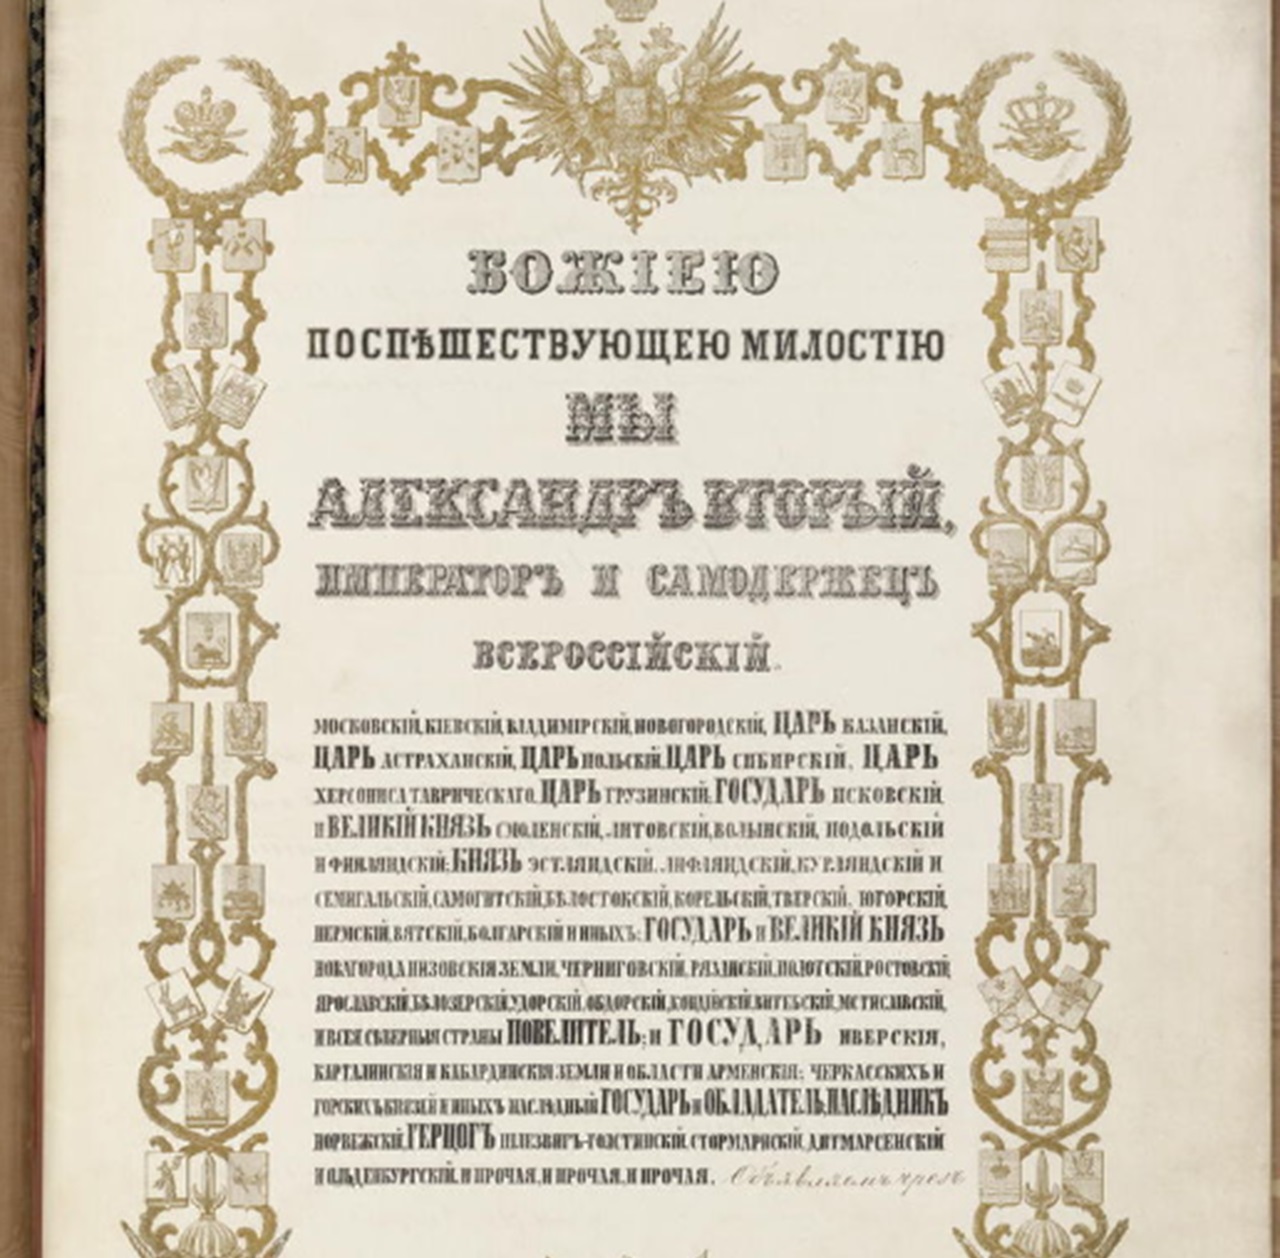 30 marzo accordi in russo firma zar Alessandro II